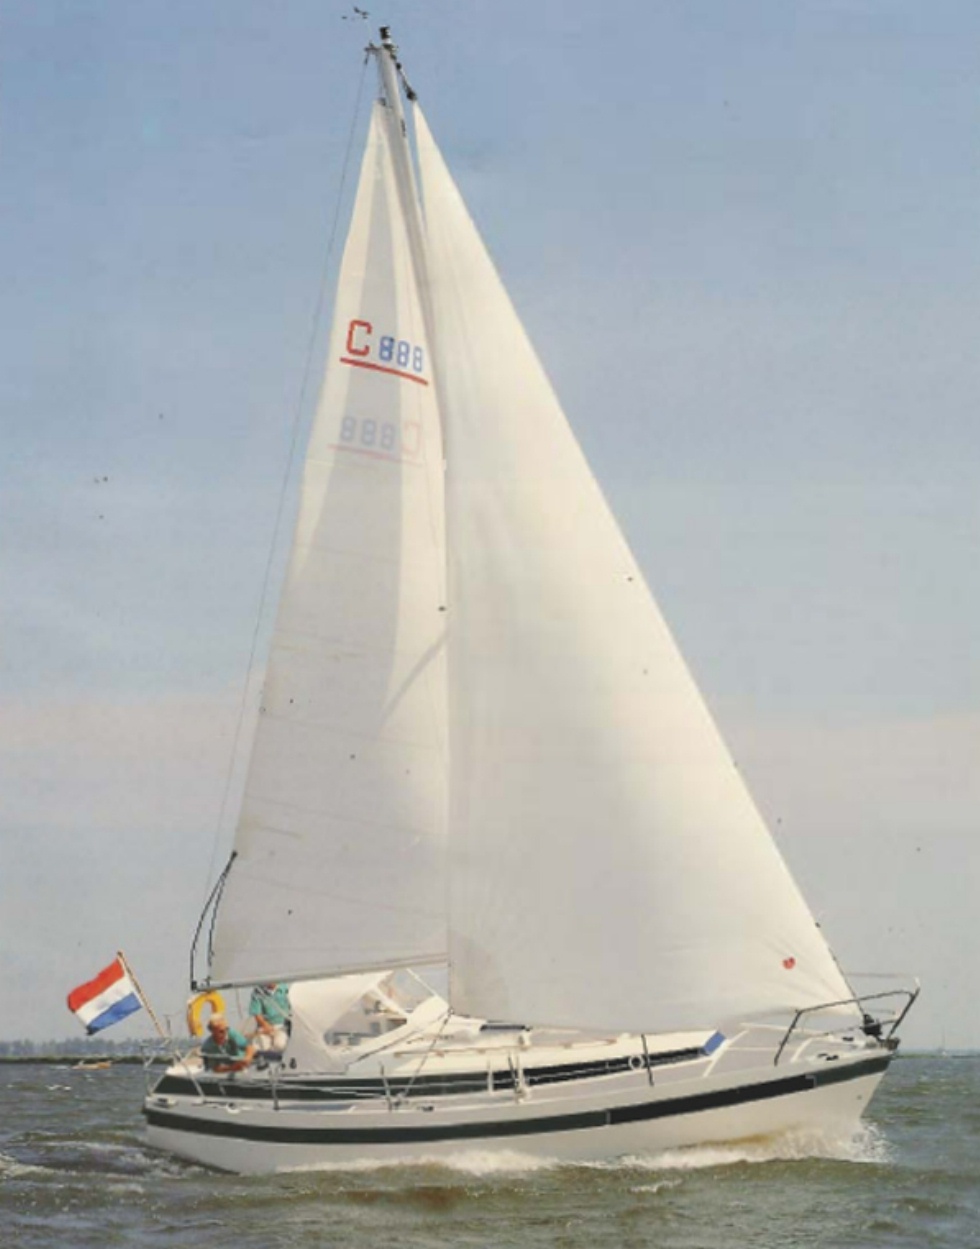 c yacht 888